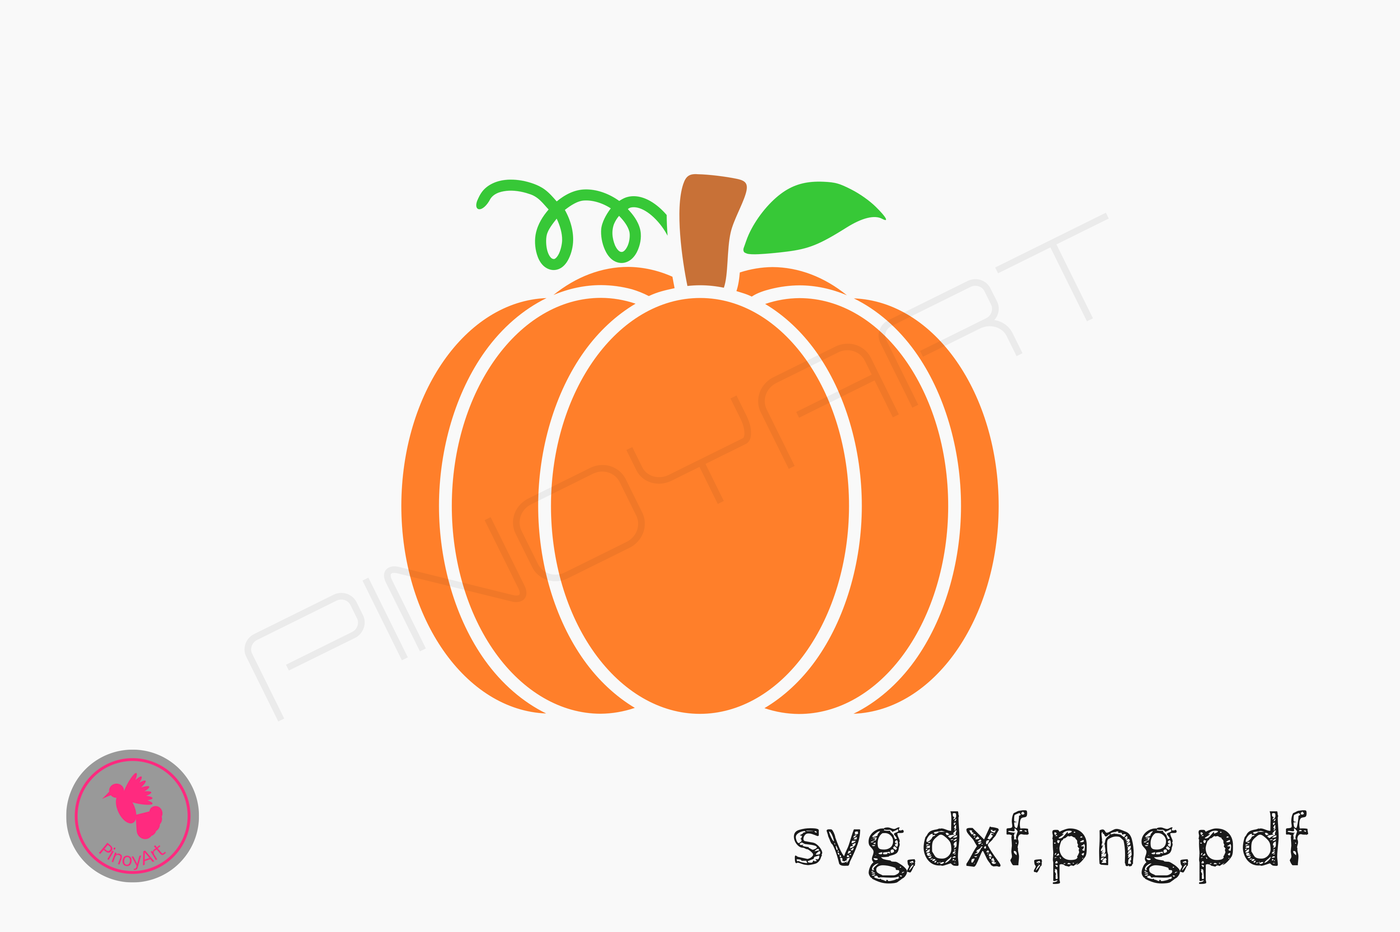 Download Pumpkin Svg Pumpkin Dxf Pumpkin Png Pumpkin Pdf Pumpkin Digital File Pumpkin Vector Pumpkin Design Pumpkin Clip Art Pumpkin Print By Pinoyart Thehungryjpeg Com